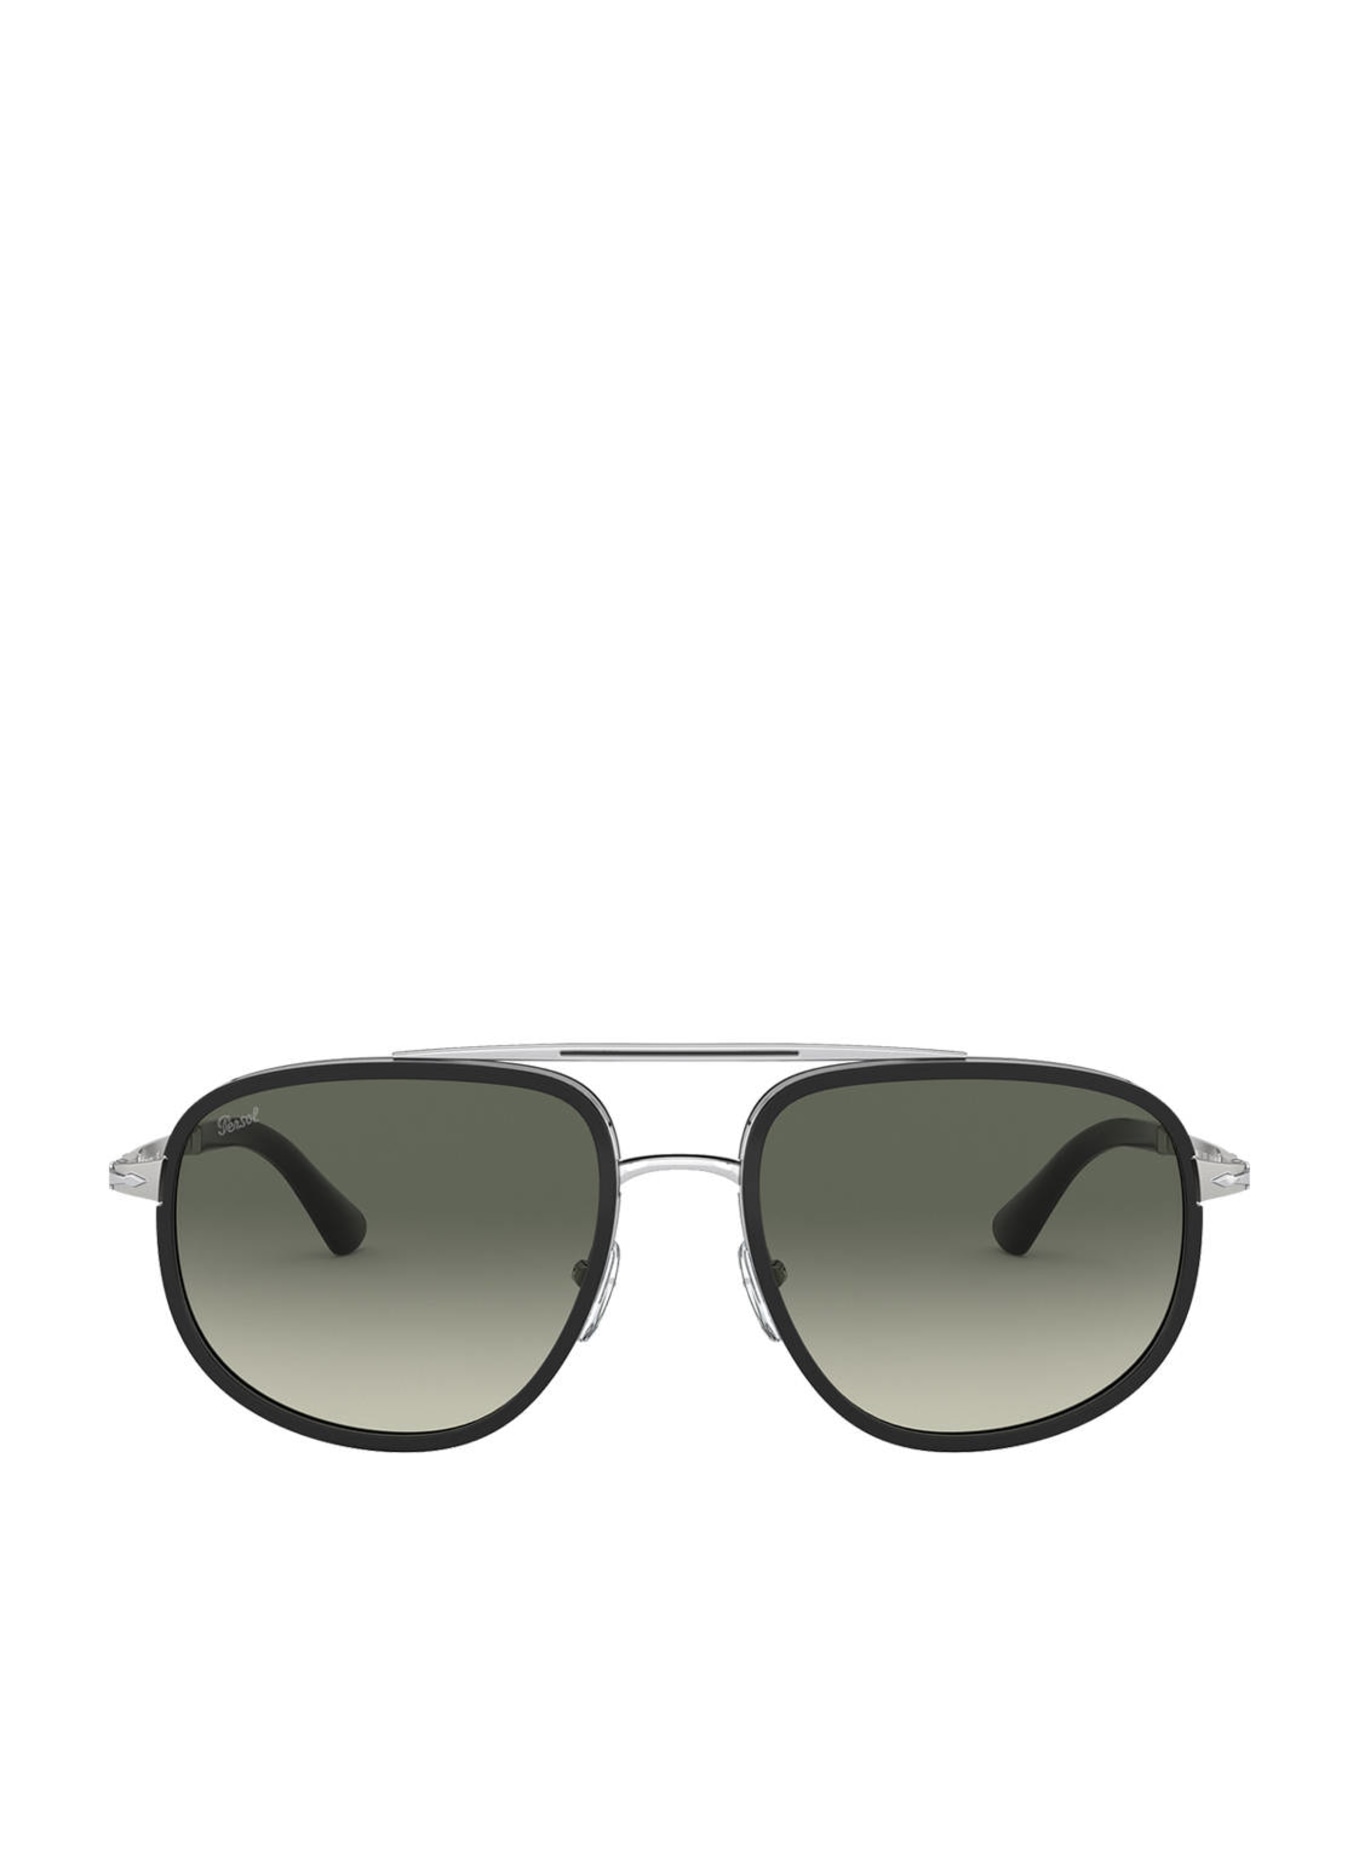 Persol Sunglasses PO2465S, Color: 518/71 - BLACK/ GRAY GRADIENT (Image 2)